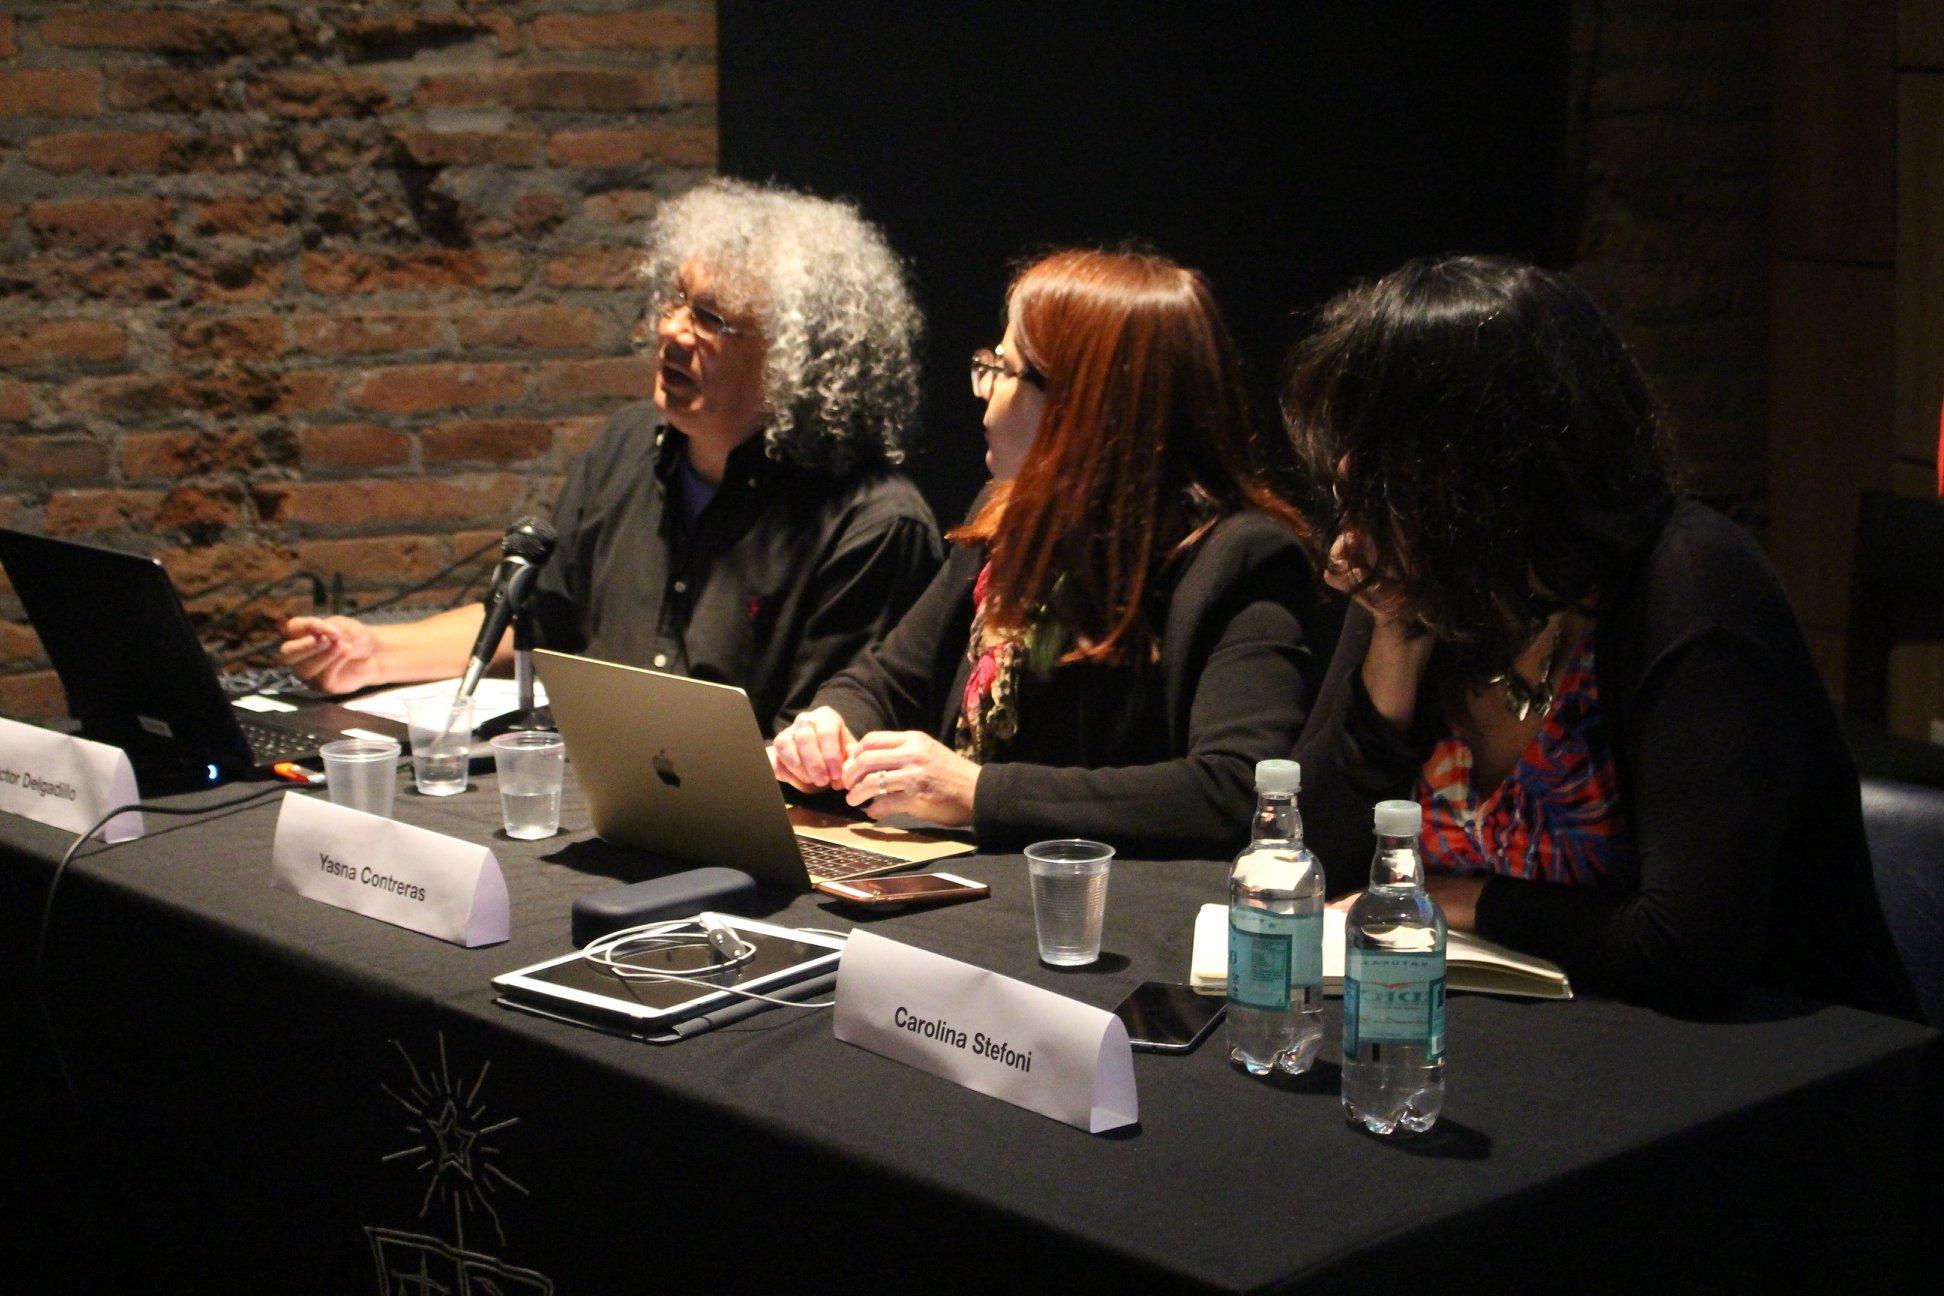 La primera mesa incluyó a Víctor Delgadillo, académico de la Universidad Autónoma de la Ciudad de México, Carolina Stefoni, Carolina Stefoni, de la Universidad Alberto Hurtado y Yasna Contreras.